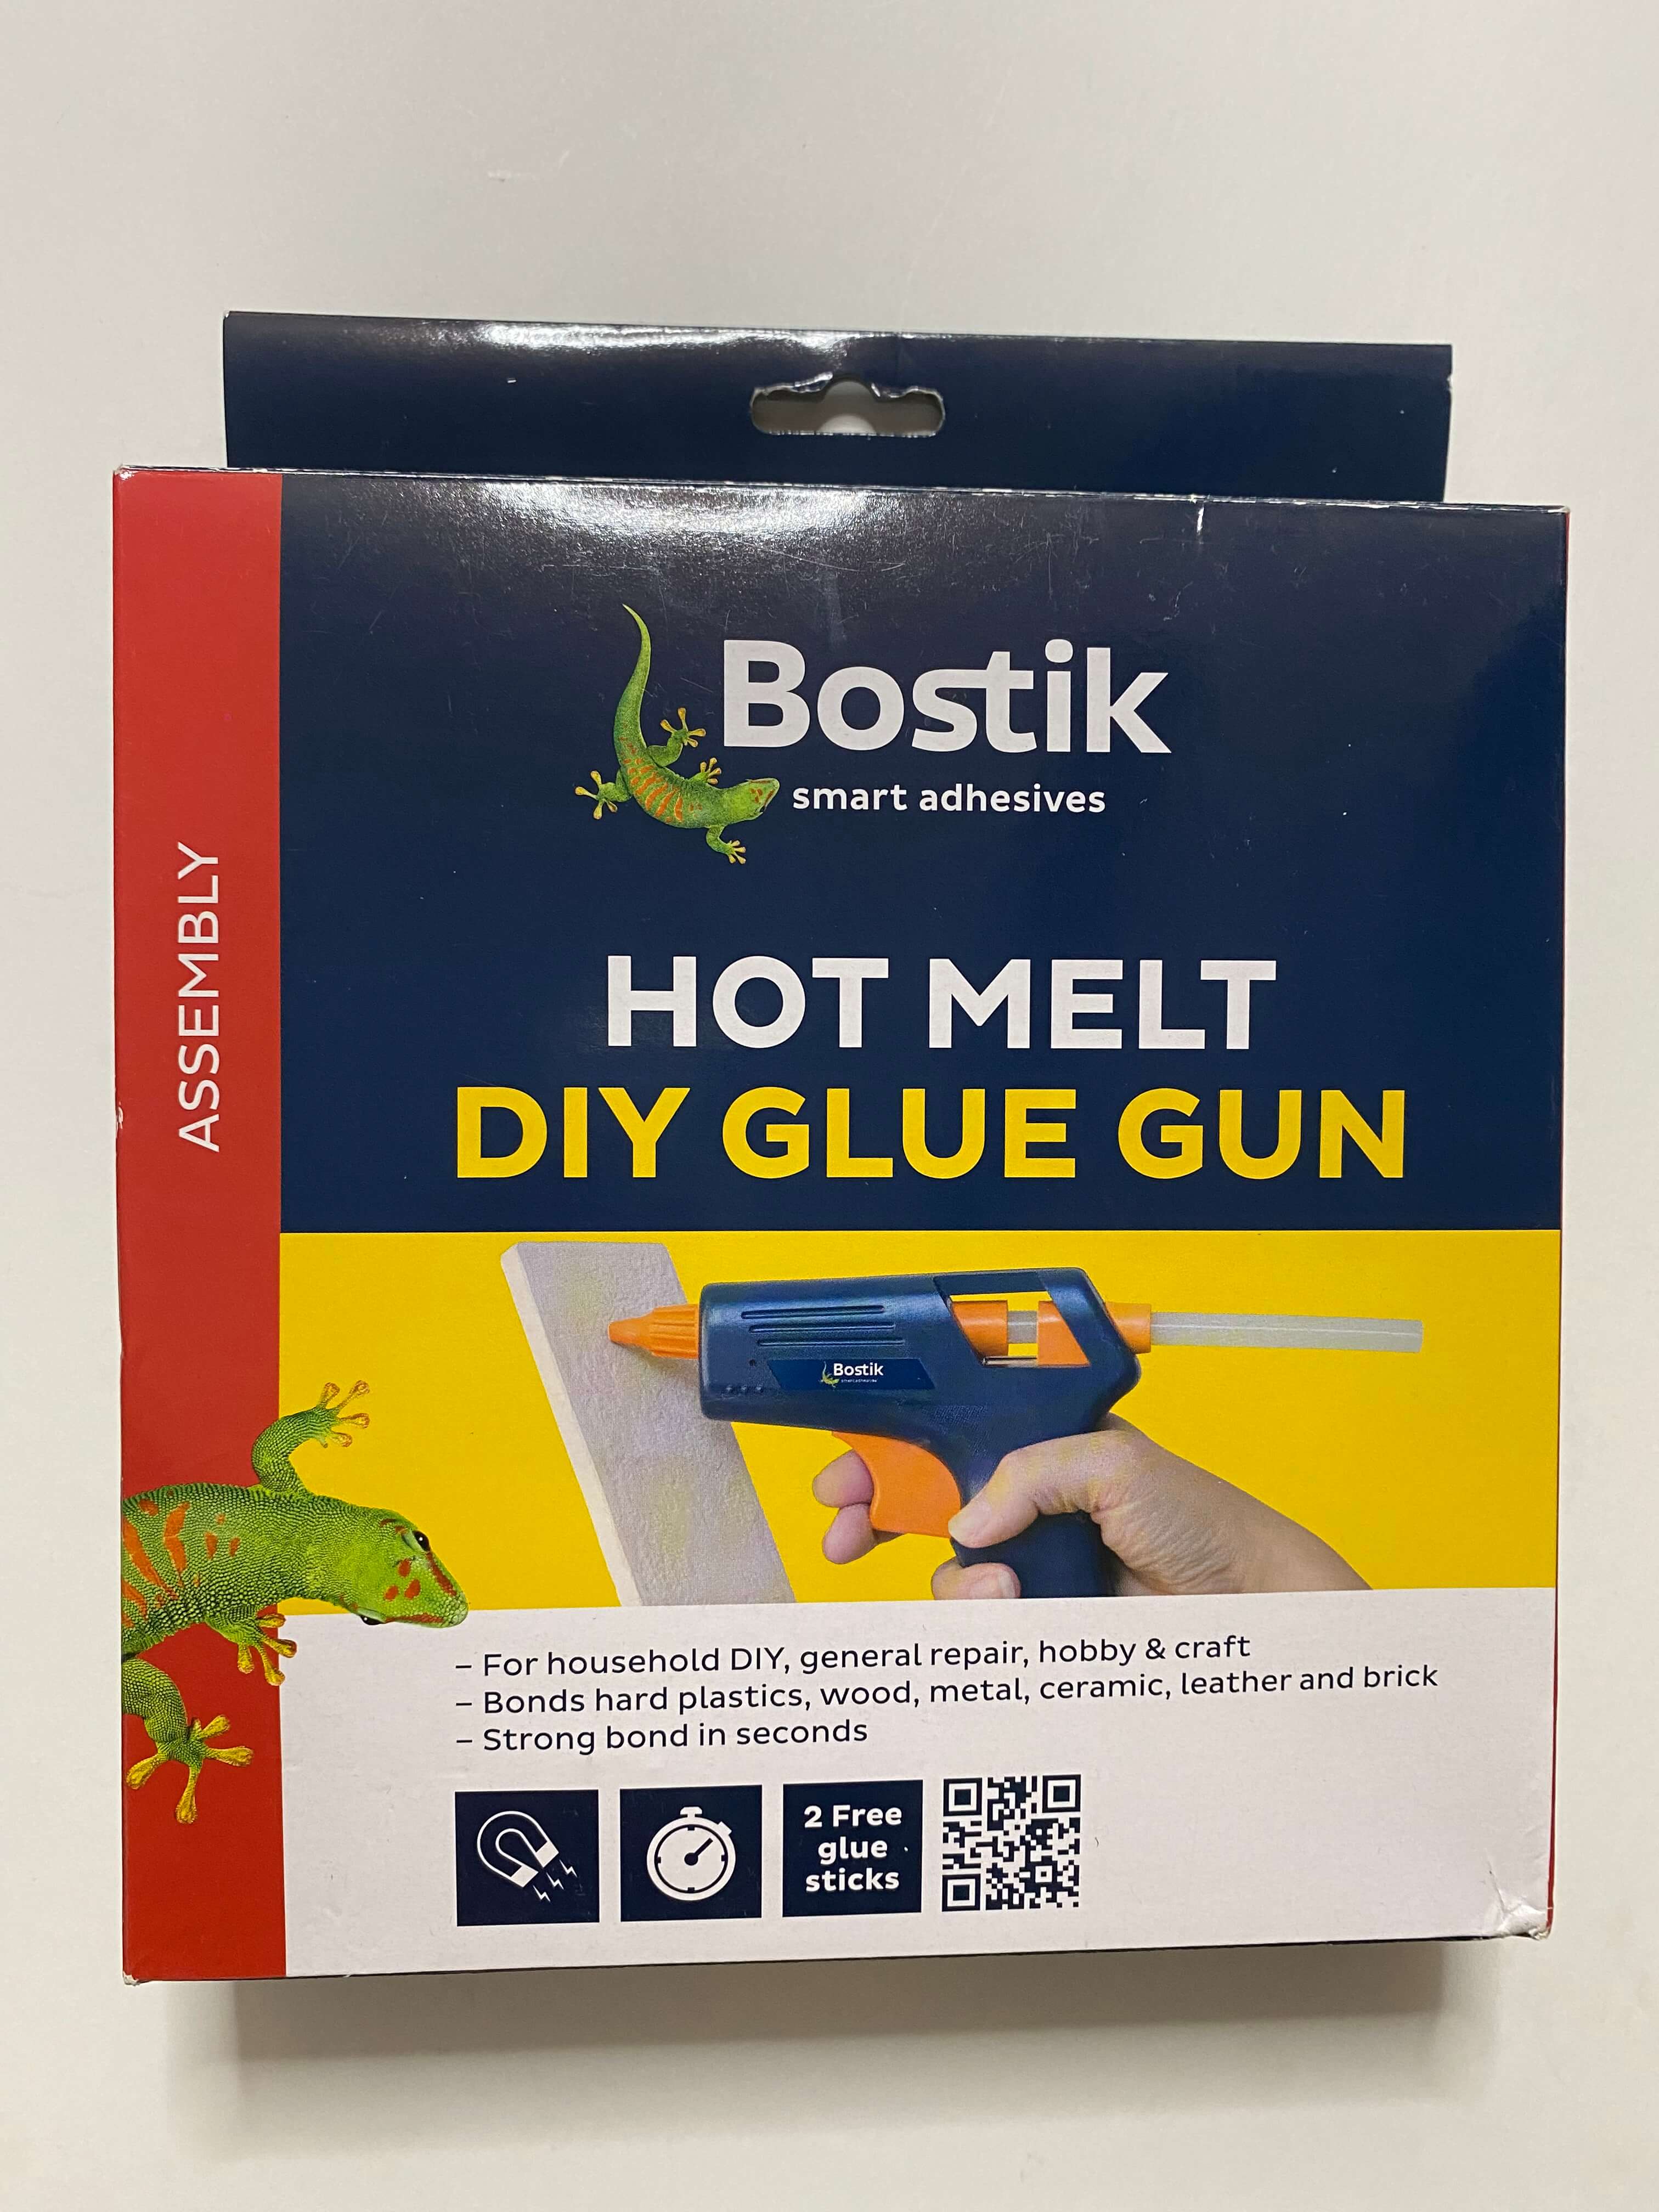 DIY Glue Gun Hot Melt